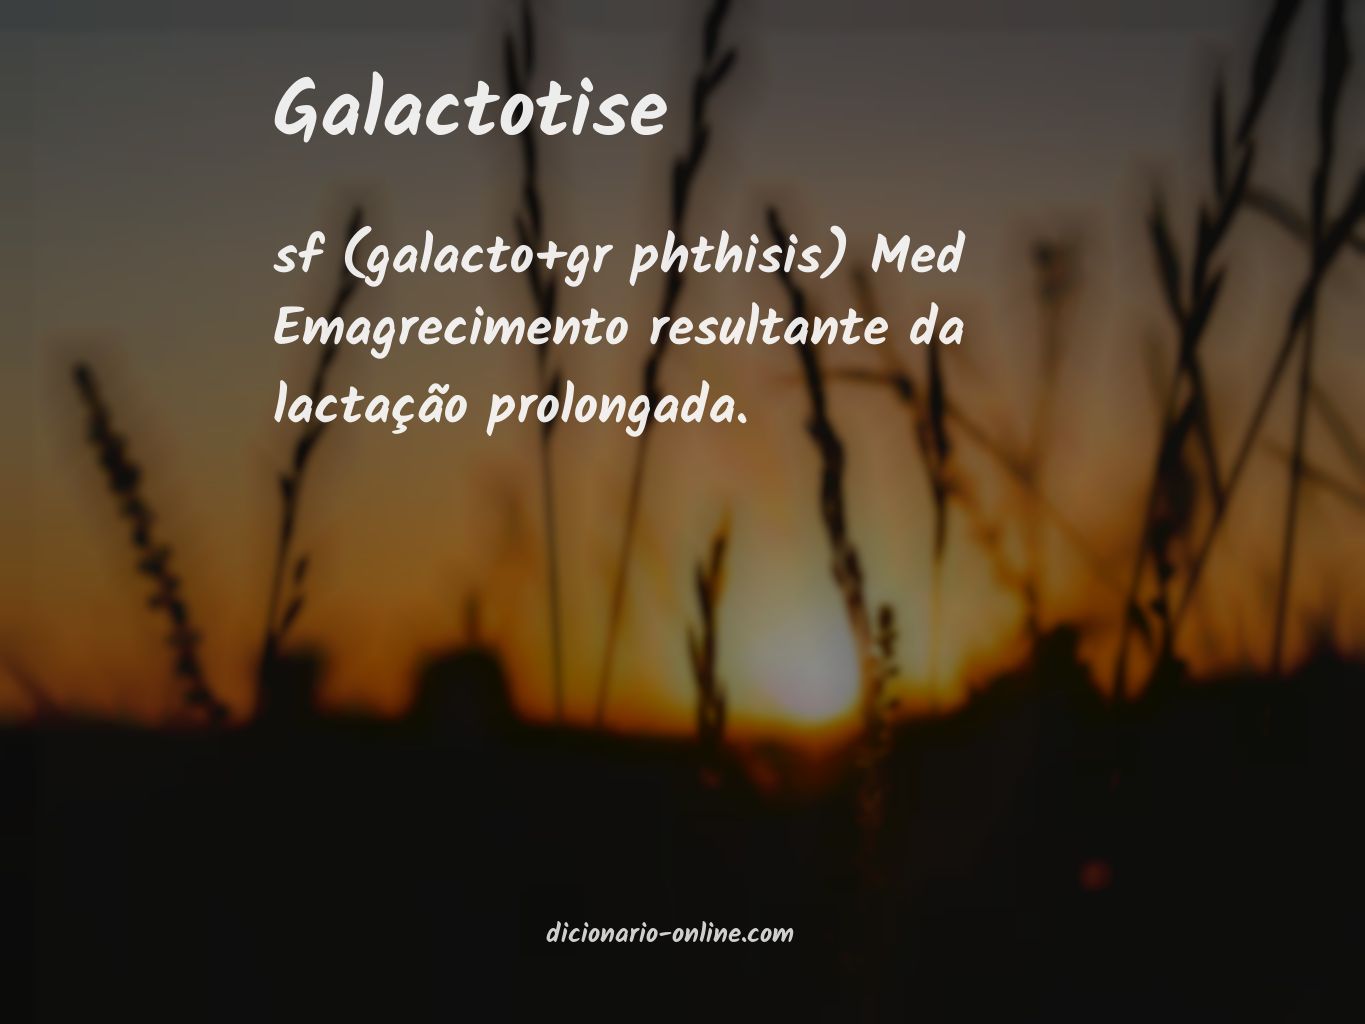 Significado de galactotise